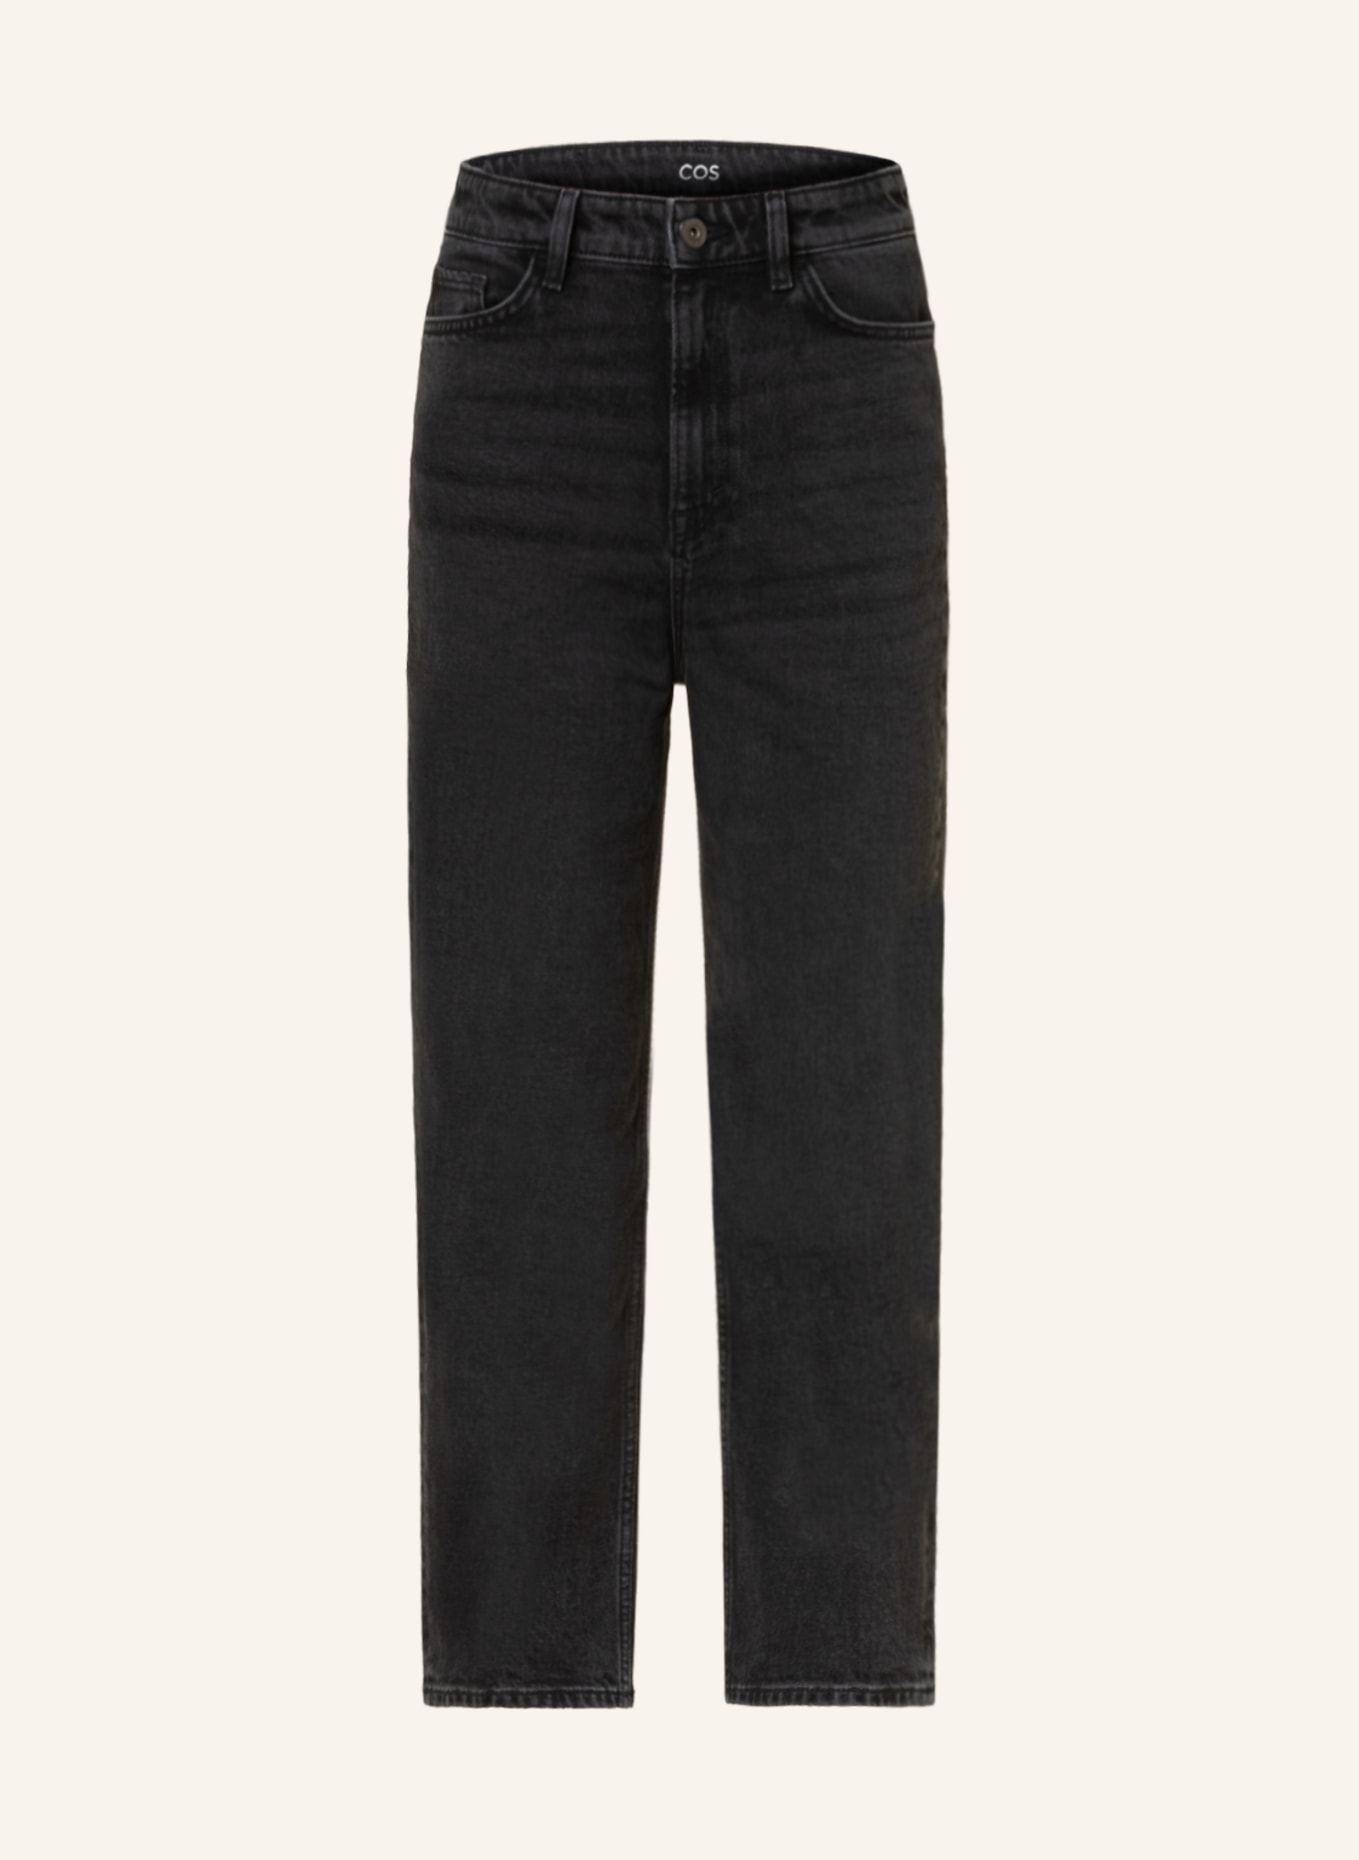 COS 7/8 jeans, Color: 002 09-090 BLACK DARK WASHED (Image 1)